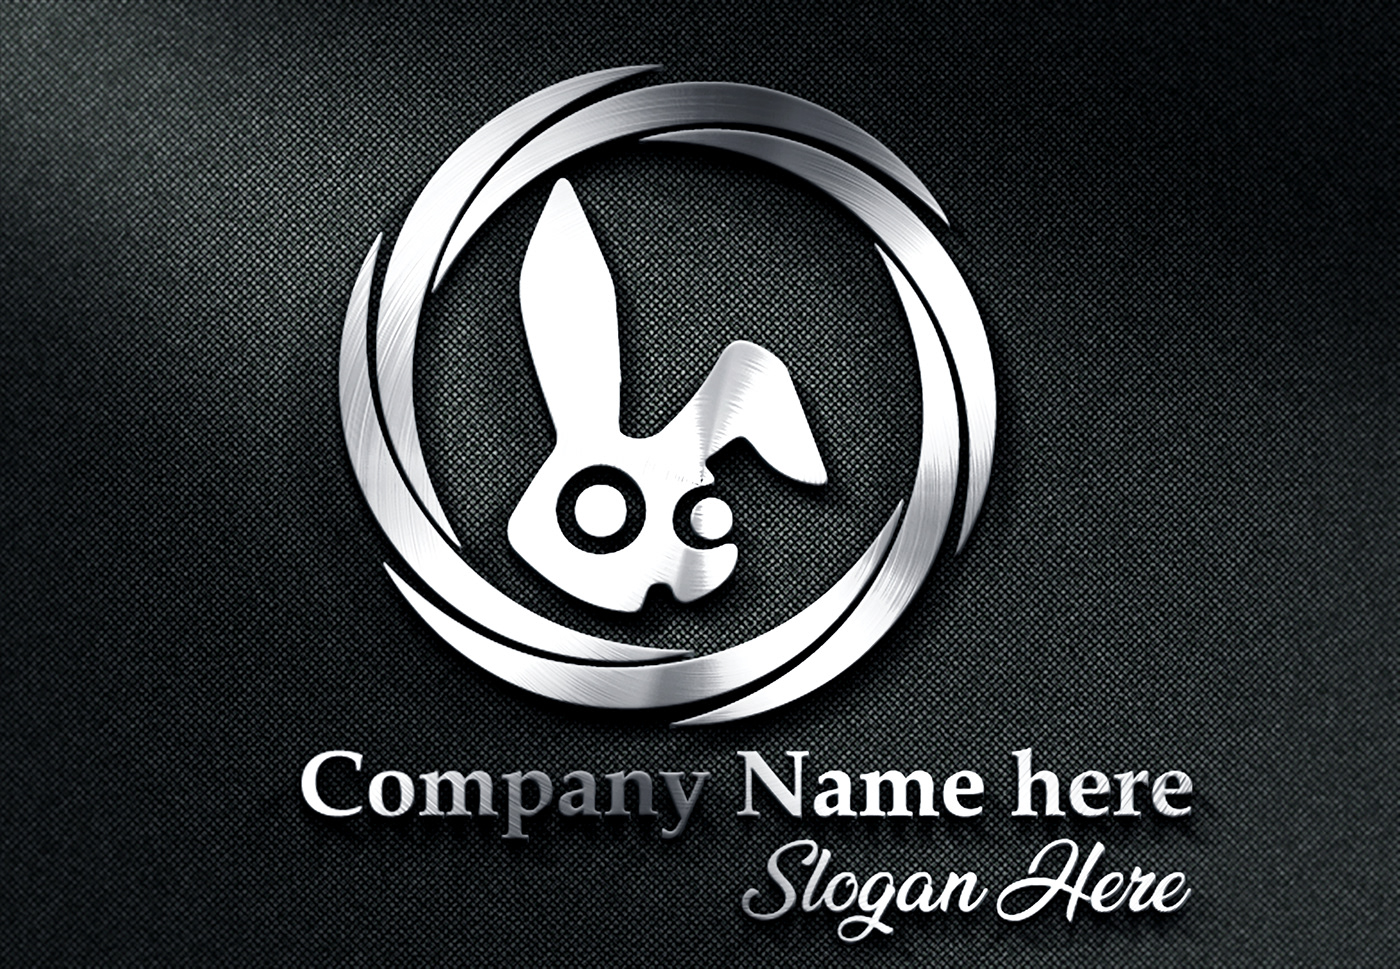 Logo Design vector graphic design  illustrations logo signature logo